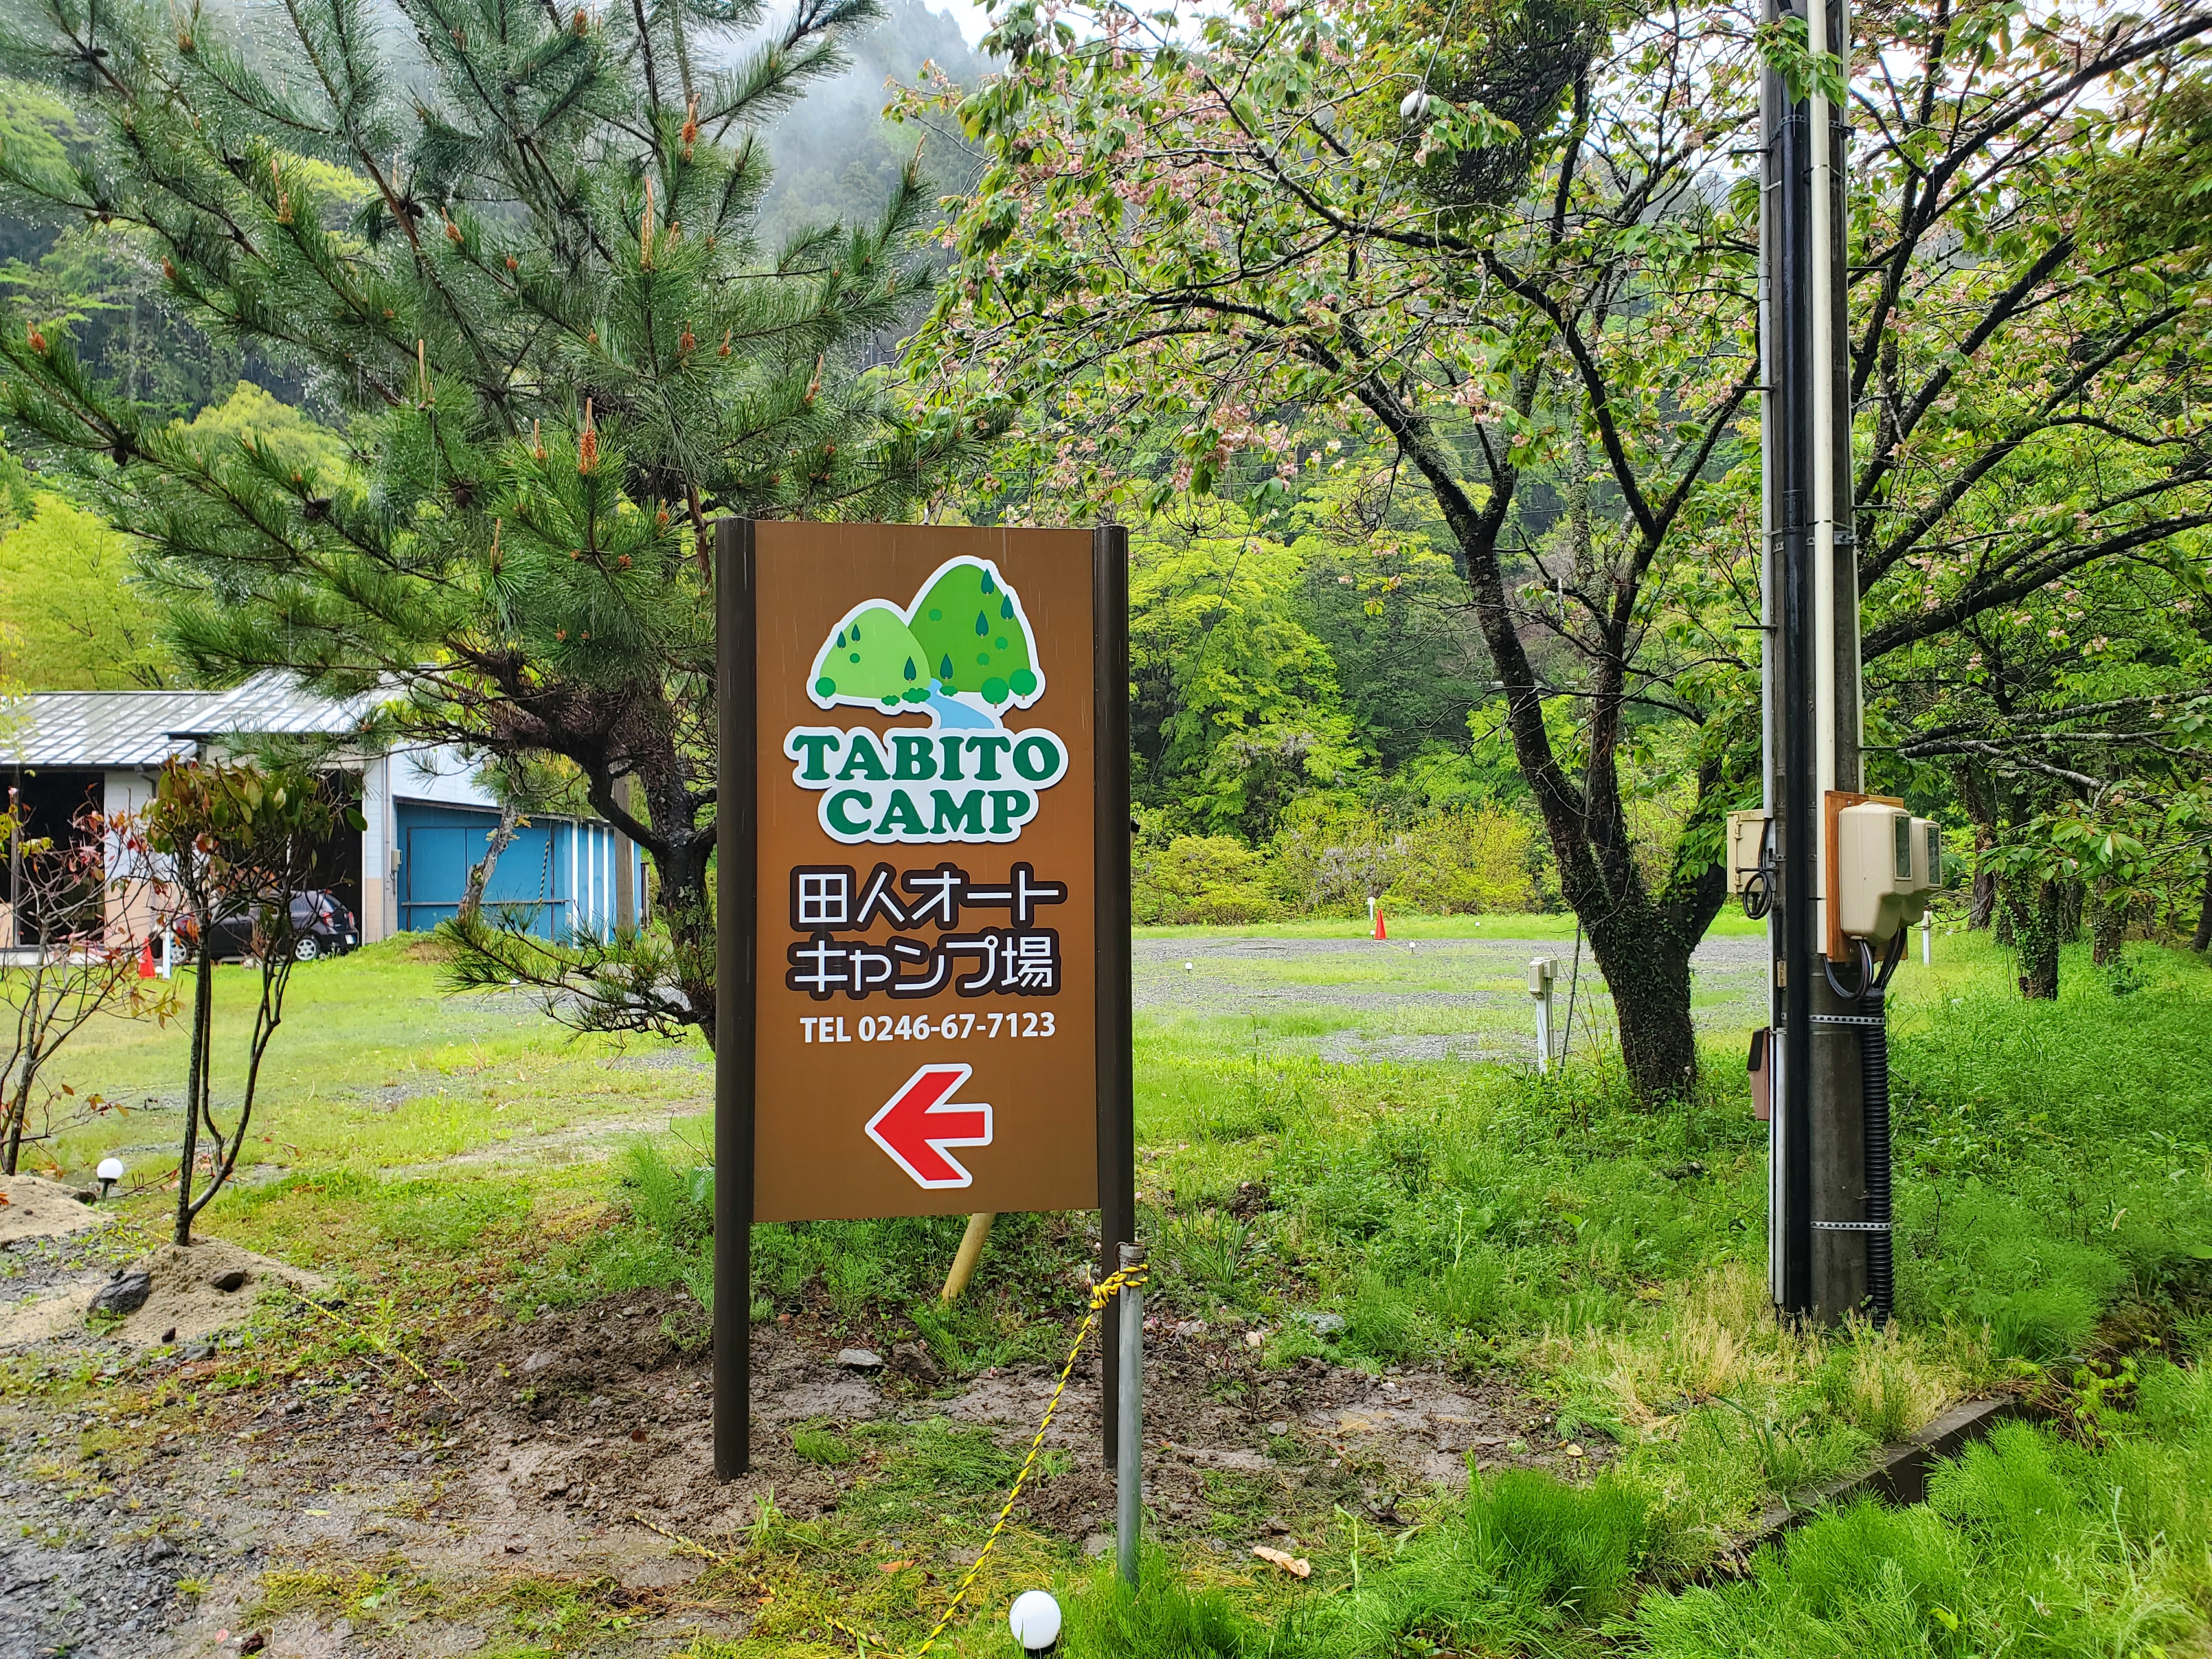 田人山荘は、田人オートキャンプ場施設内にあります。